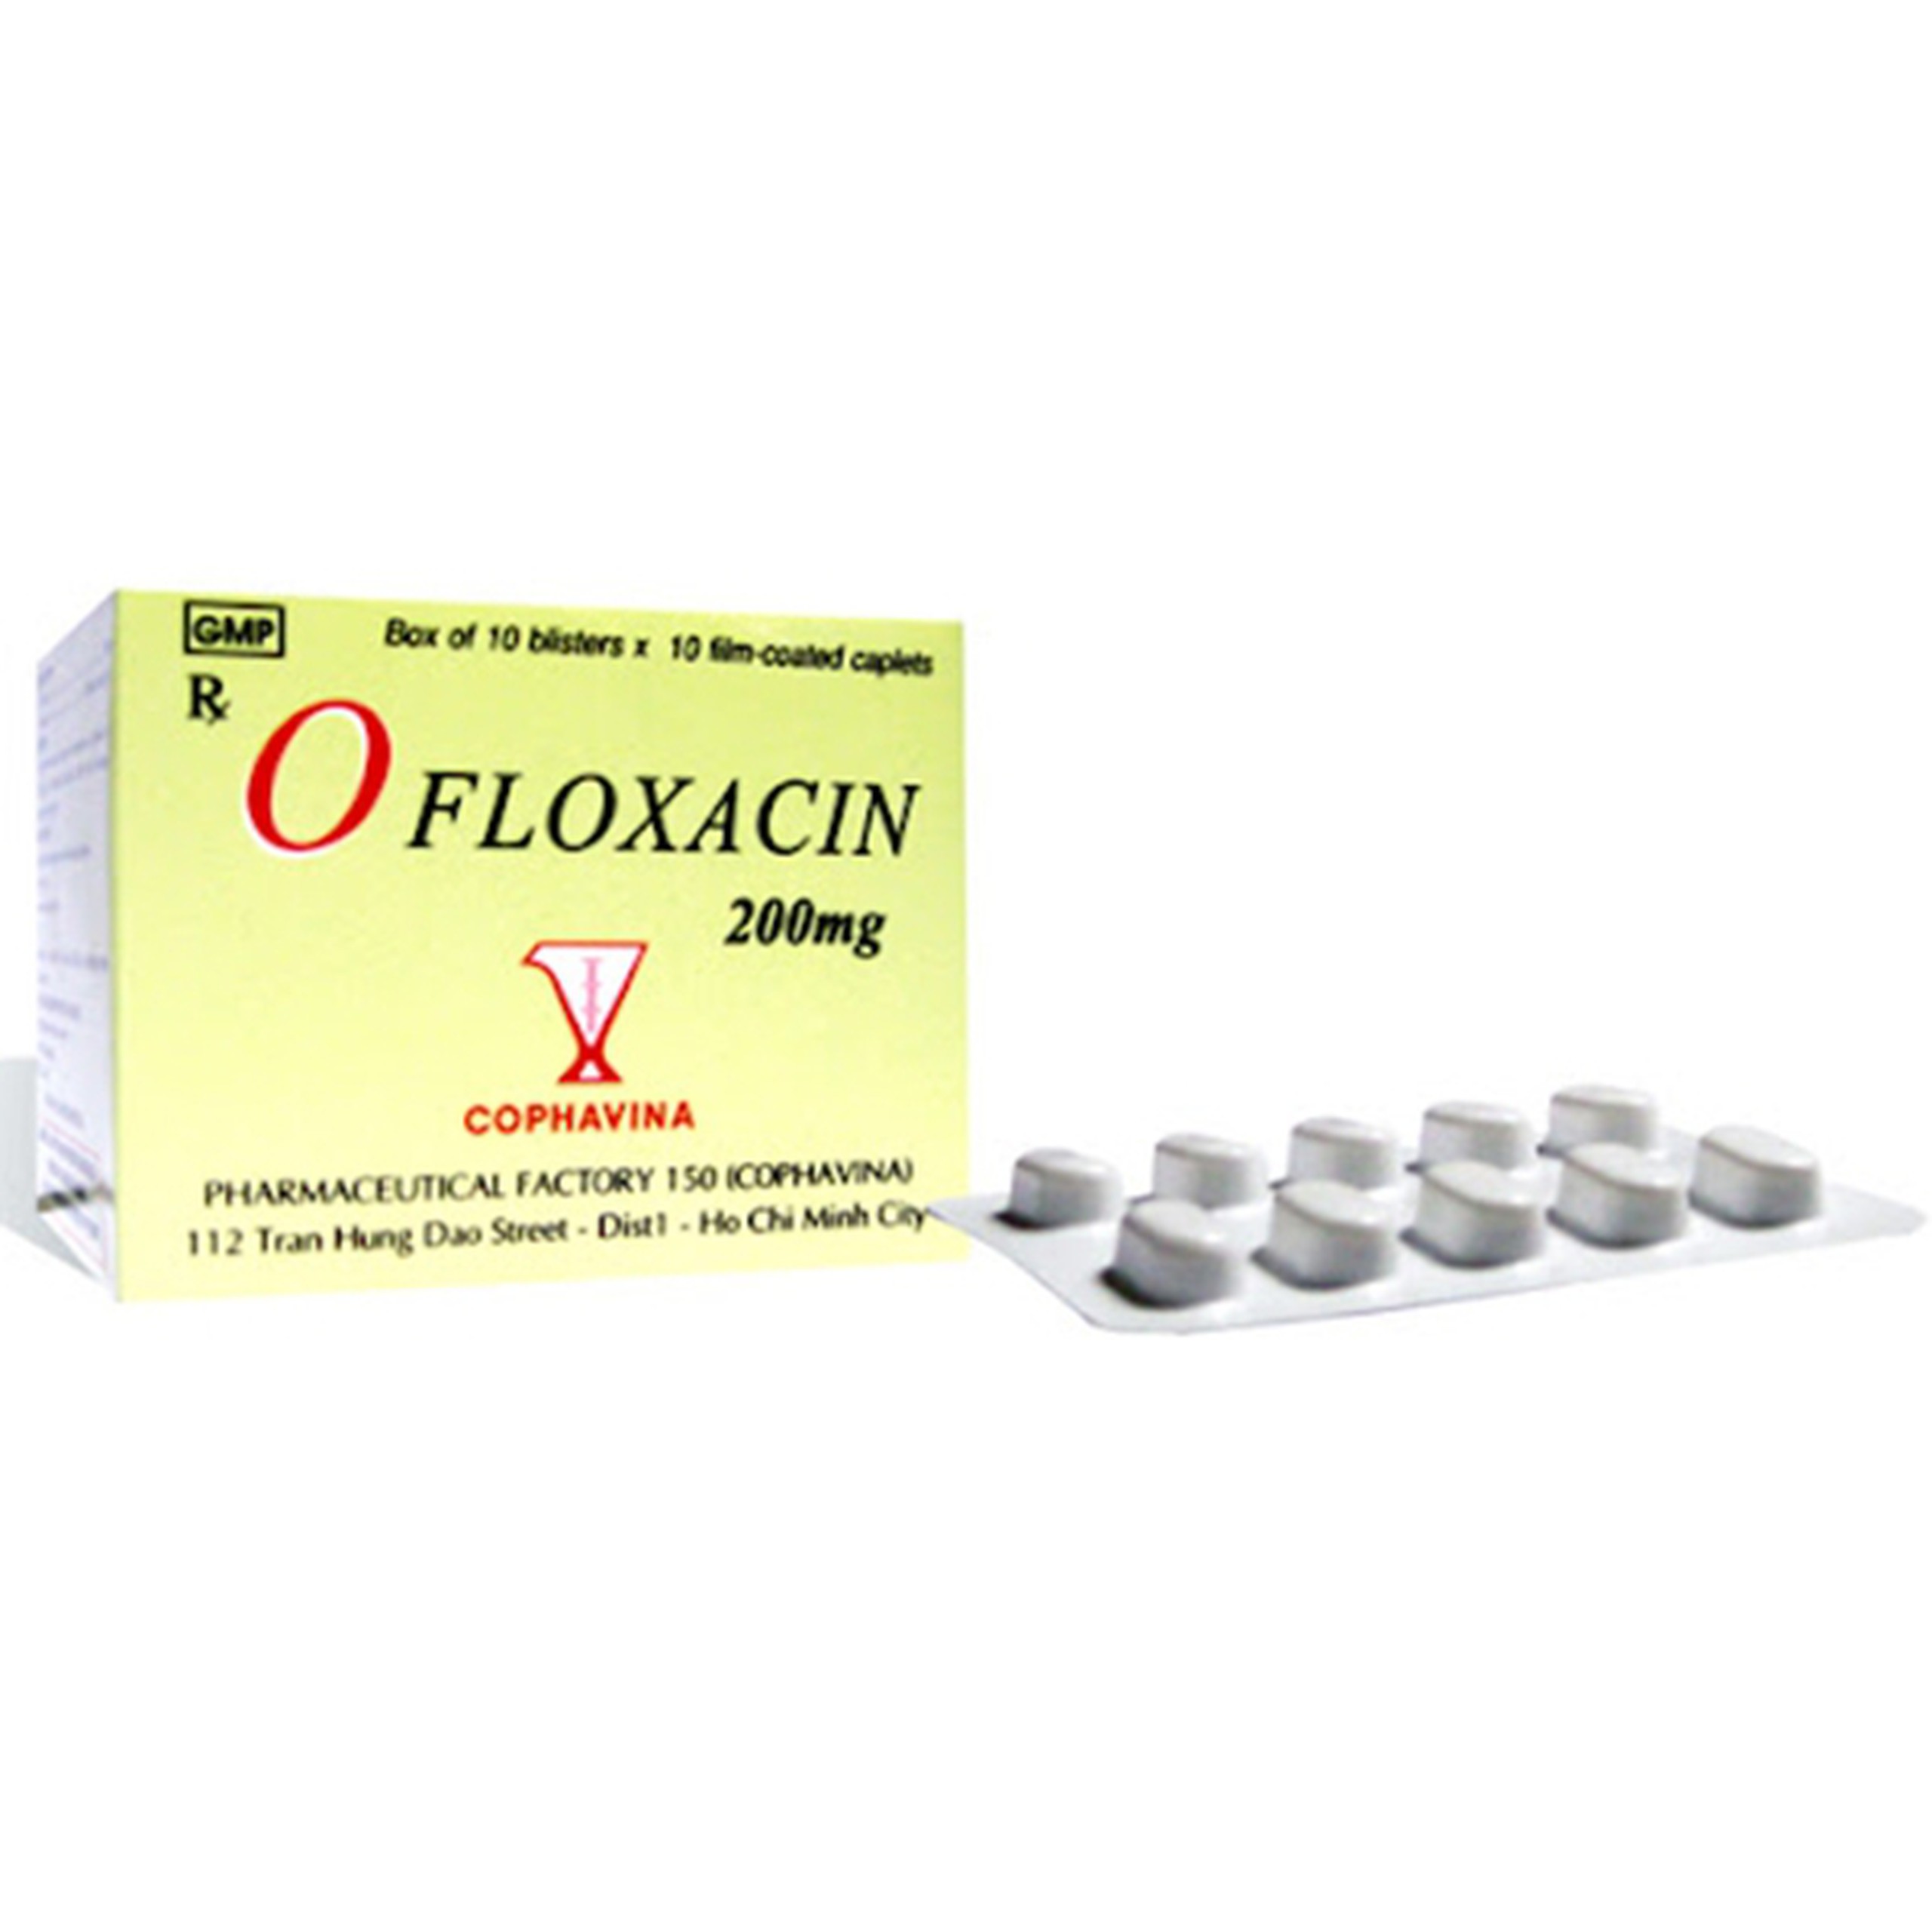 Viên nén Ofloxacin 200mg Armephaco điều trị viêm phế quản nặng, lậu, viêm tuyến tiền liệt (10 vỉ x 10 viên)